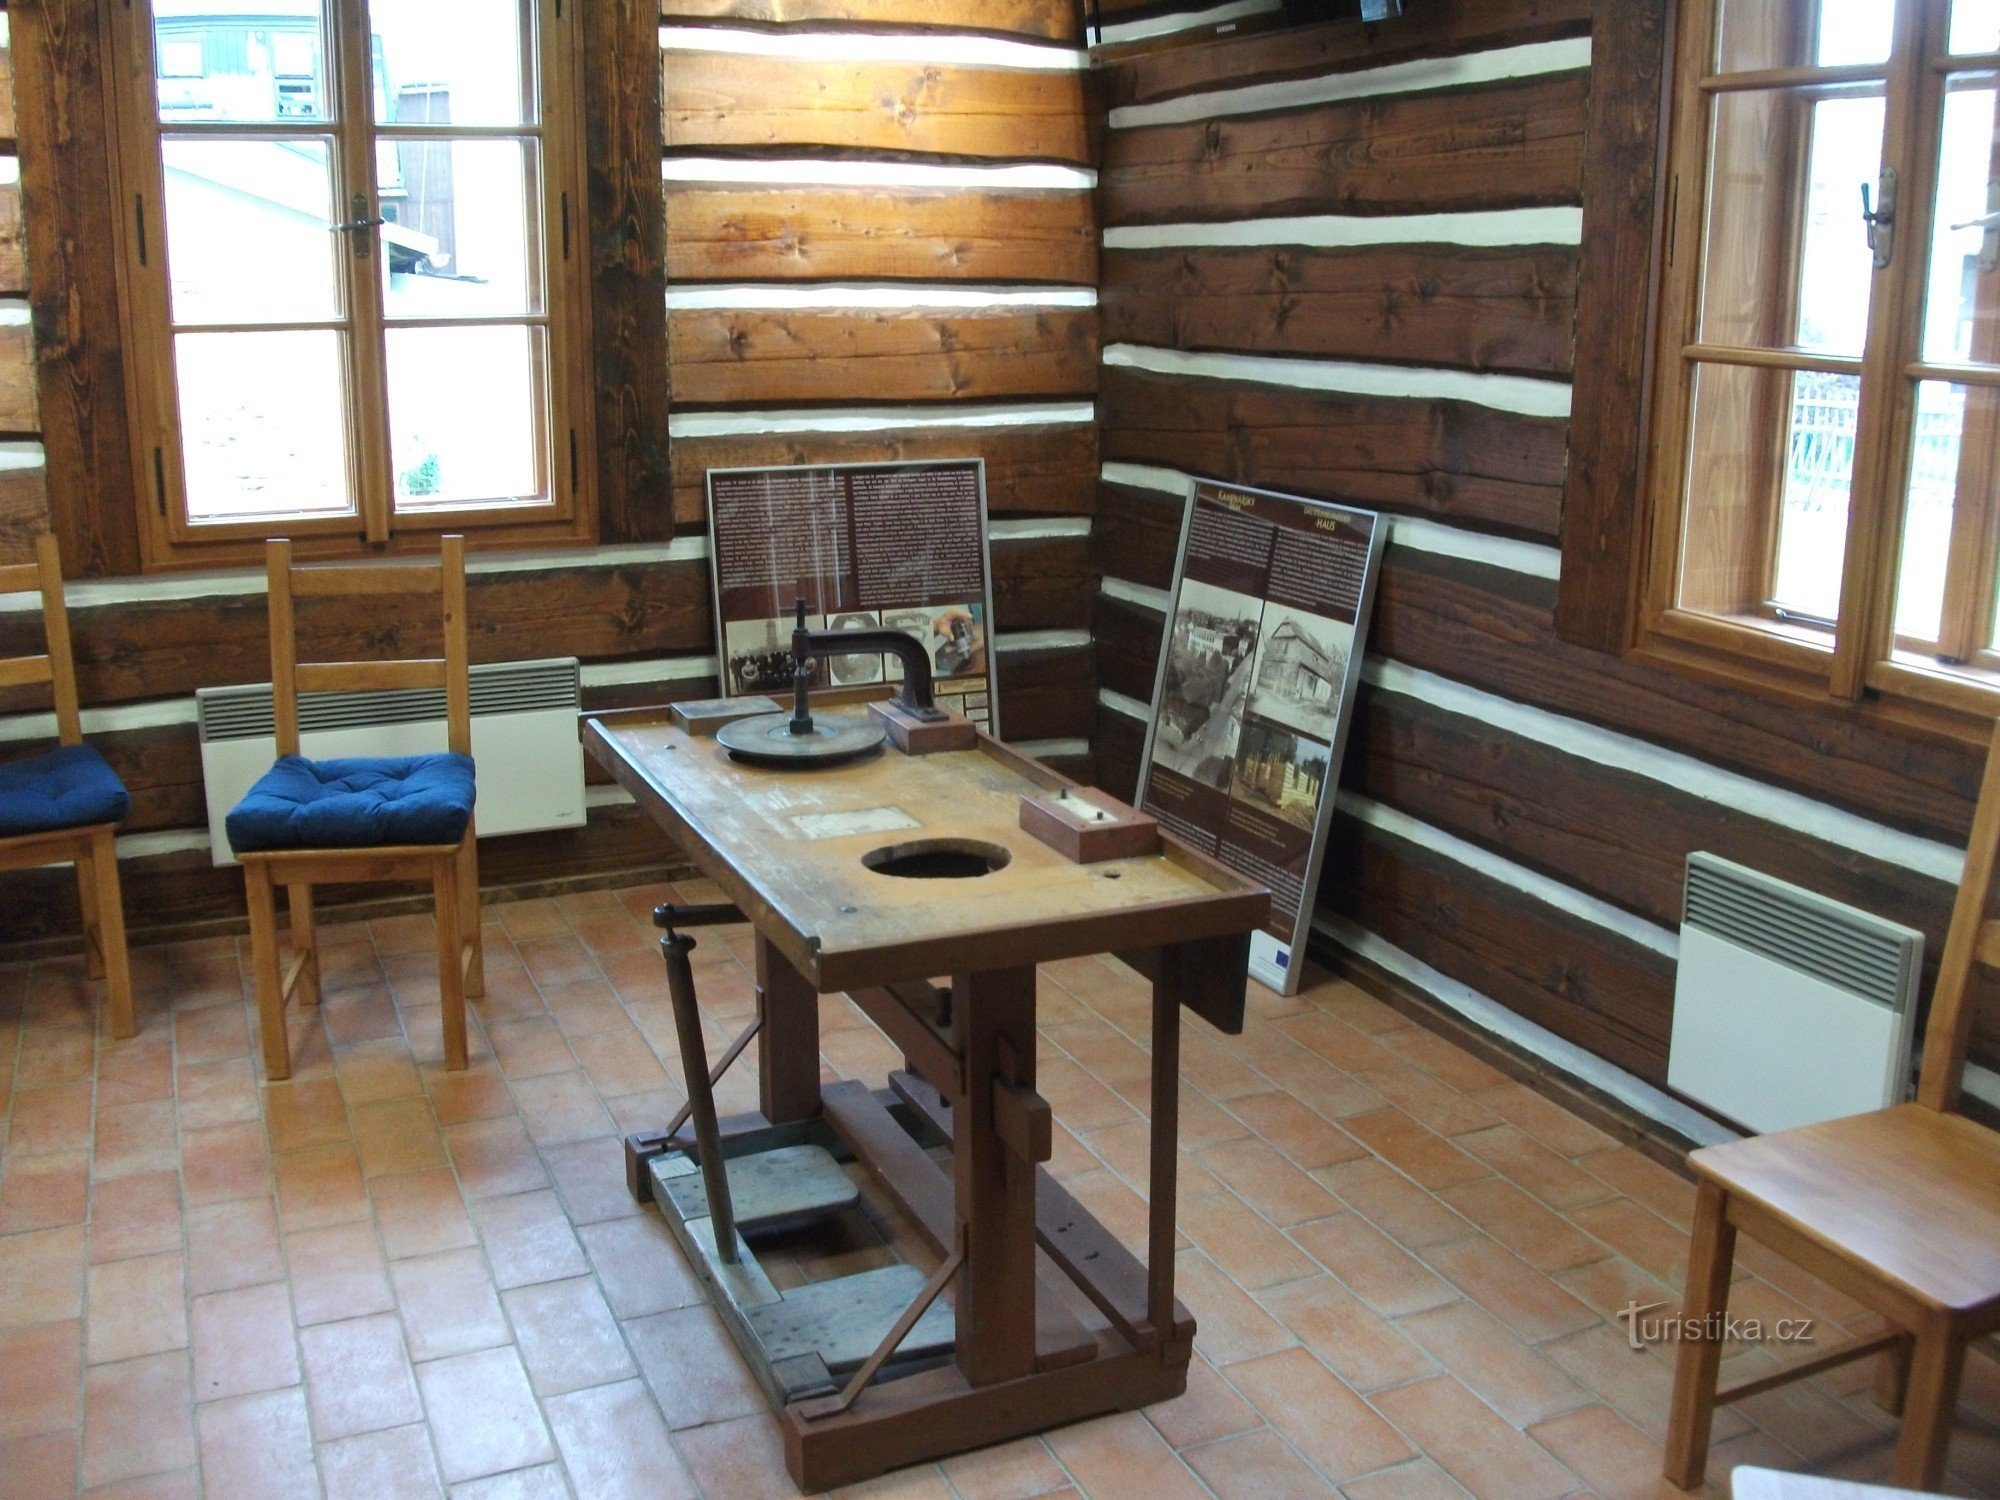 Stenhusets indre rummer også et arbejdsbord med bearbejdningsværktøj